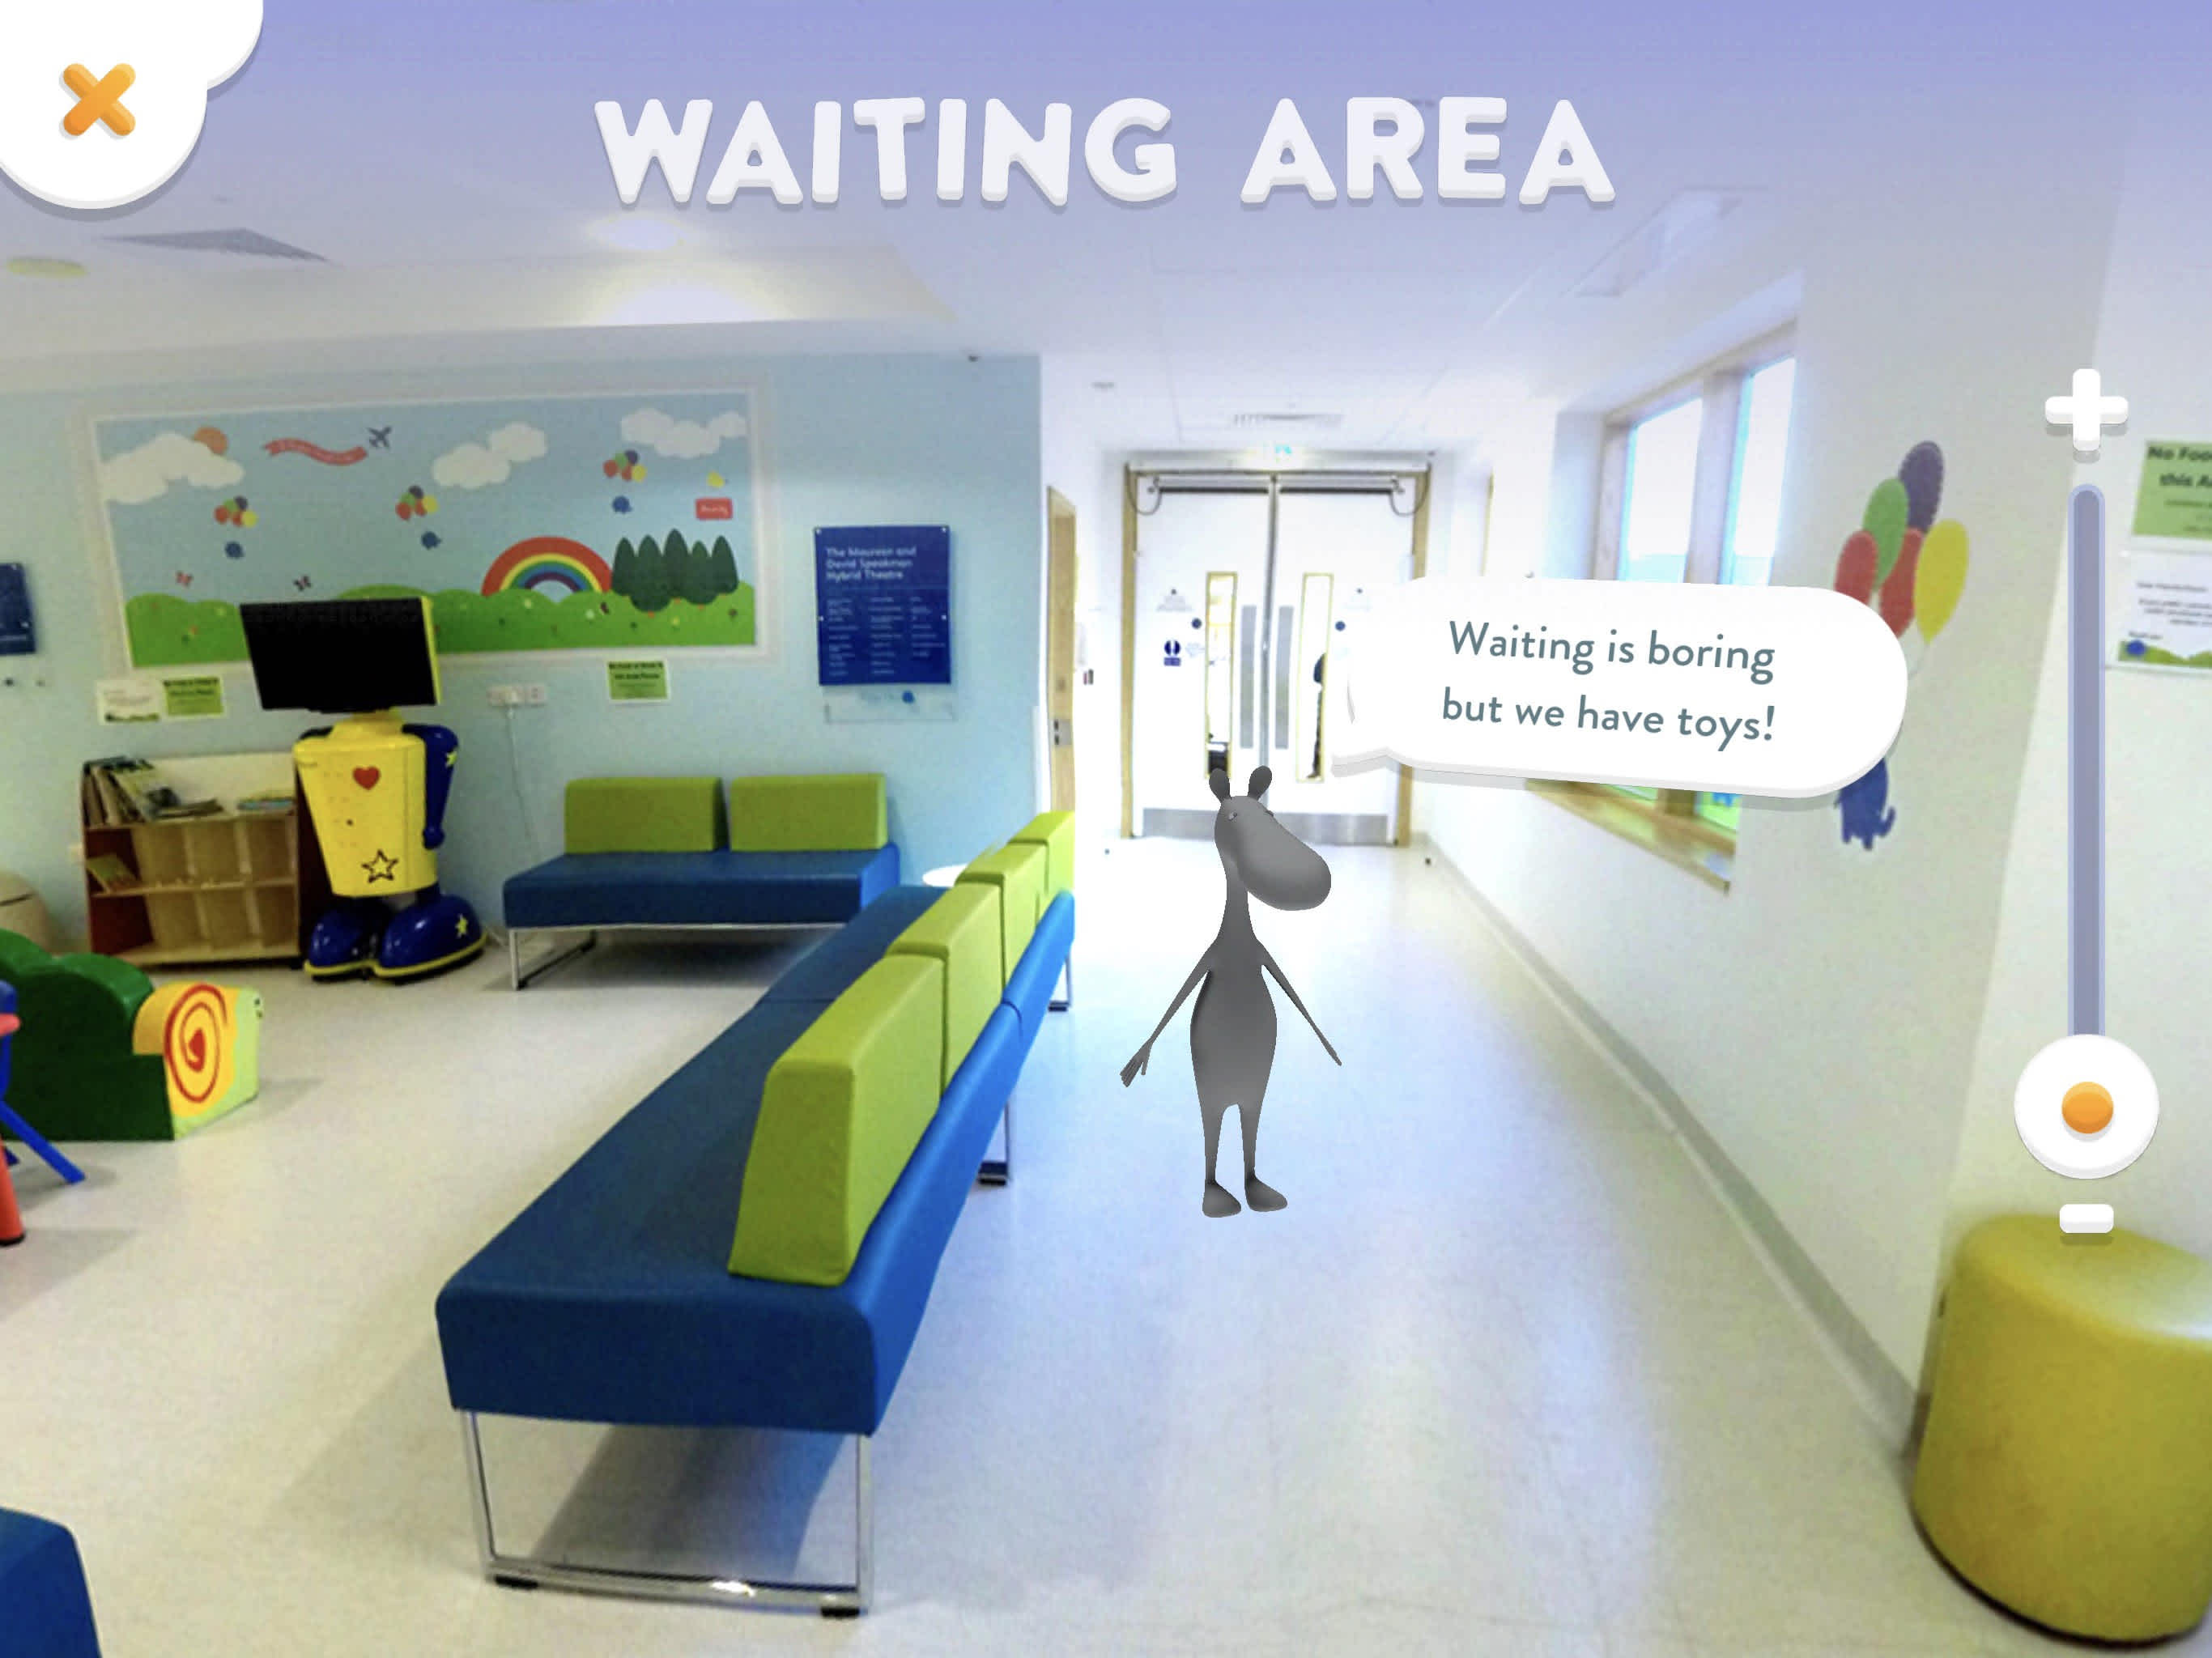 In-app screen of hospital foyer